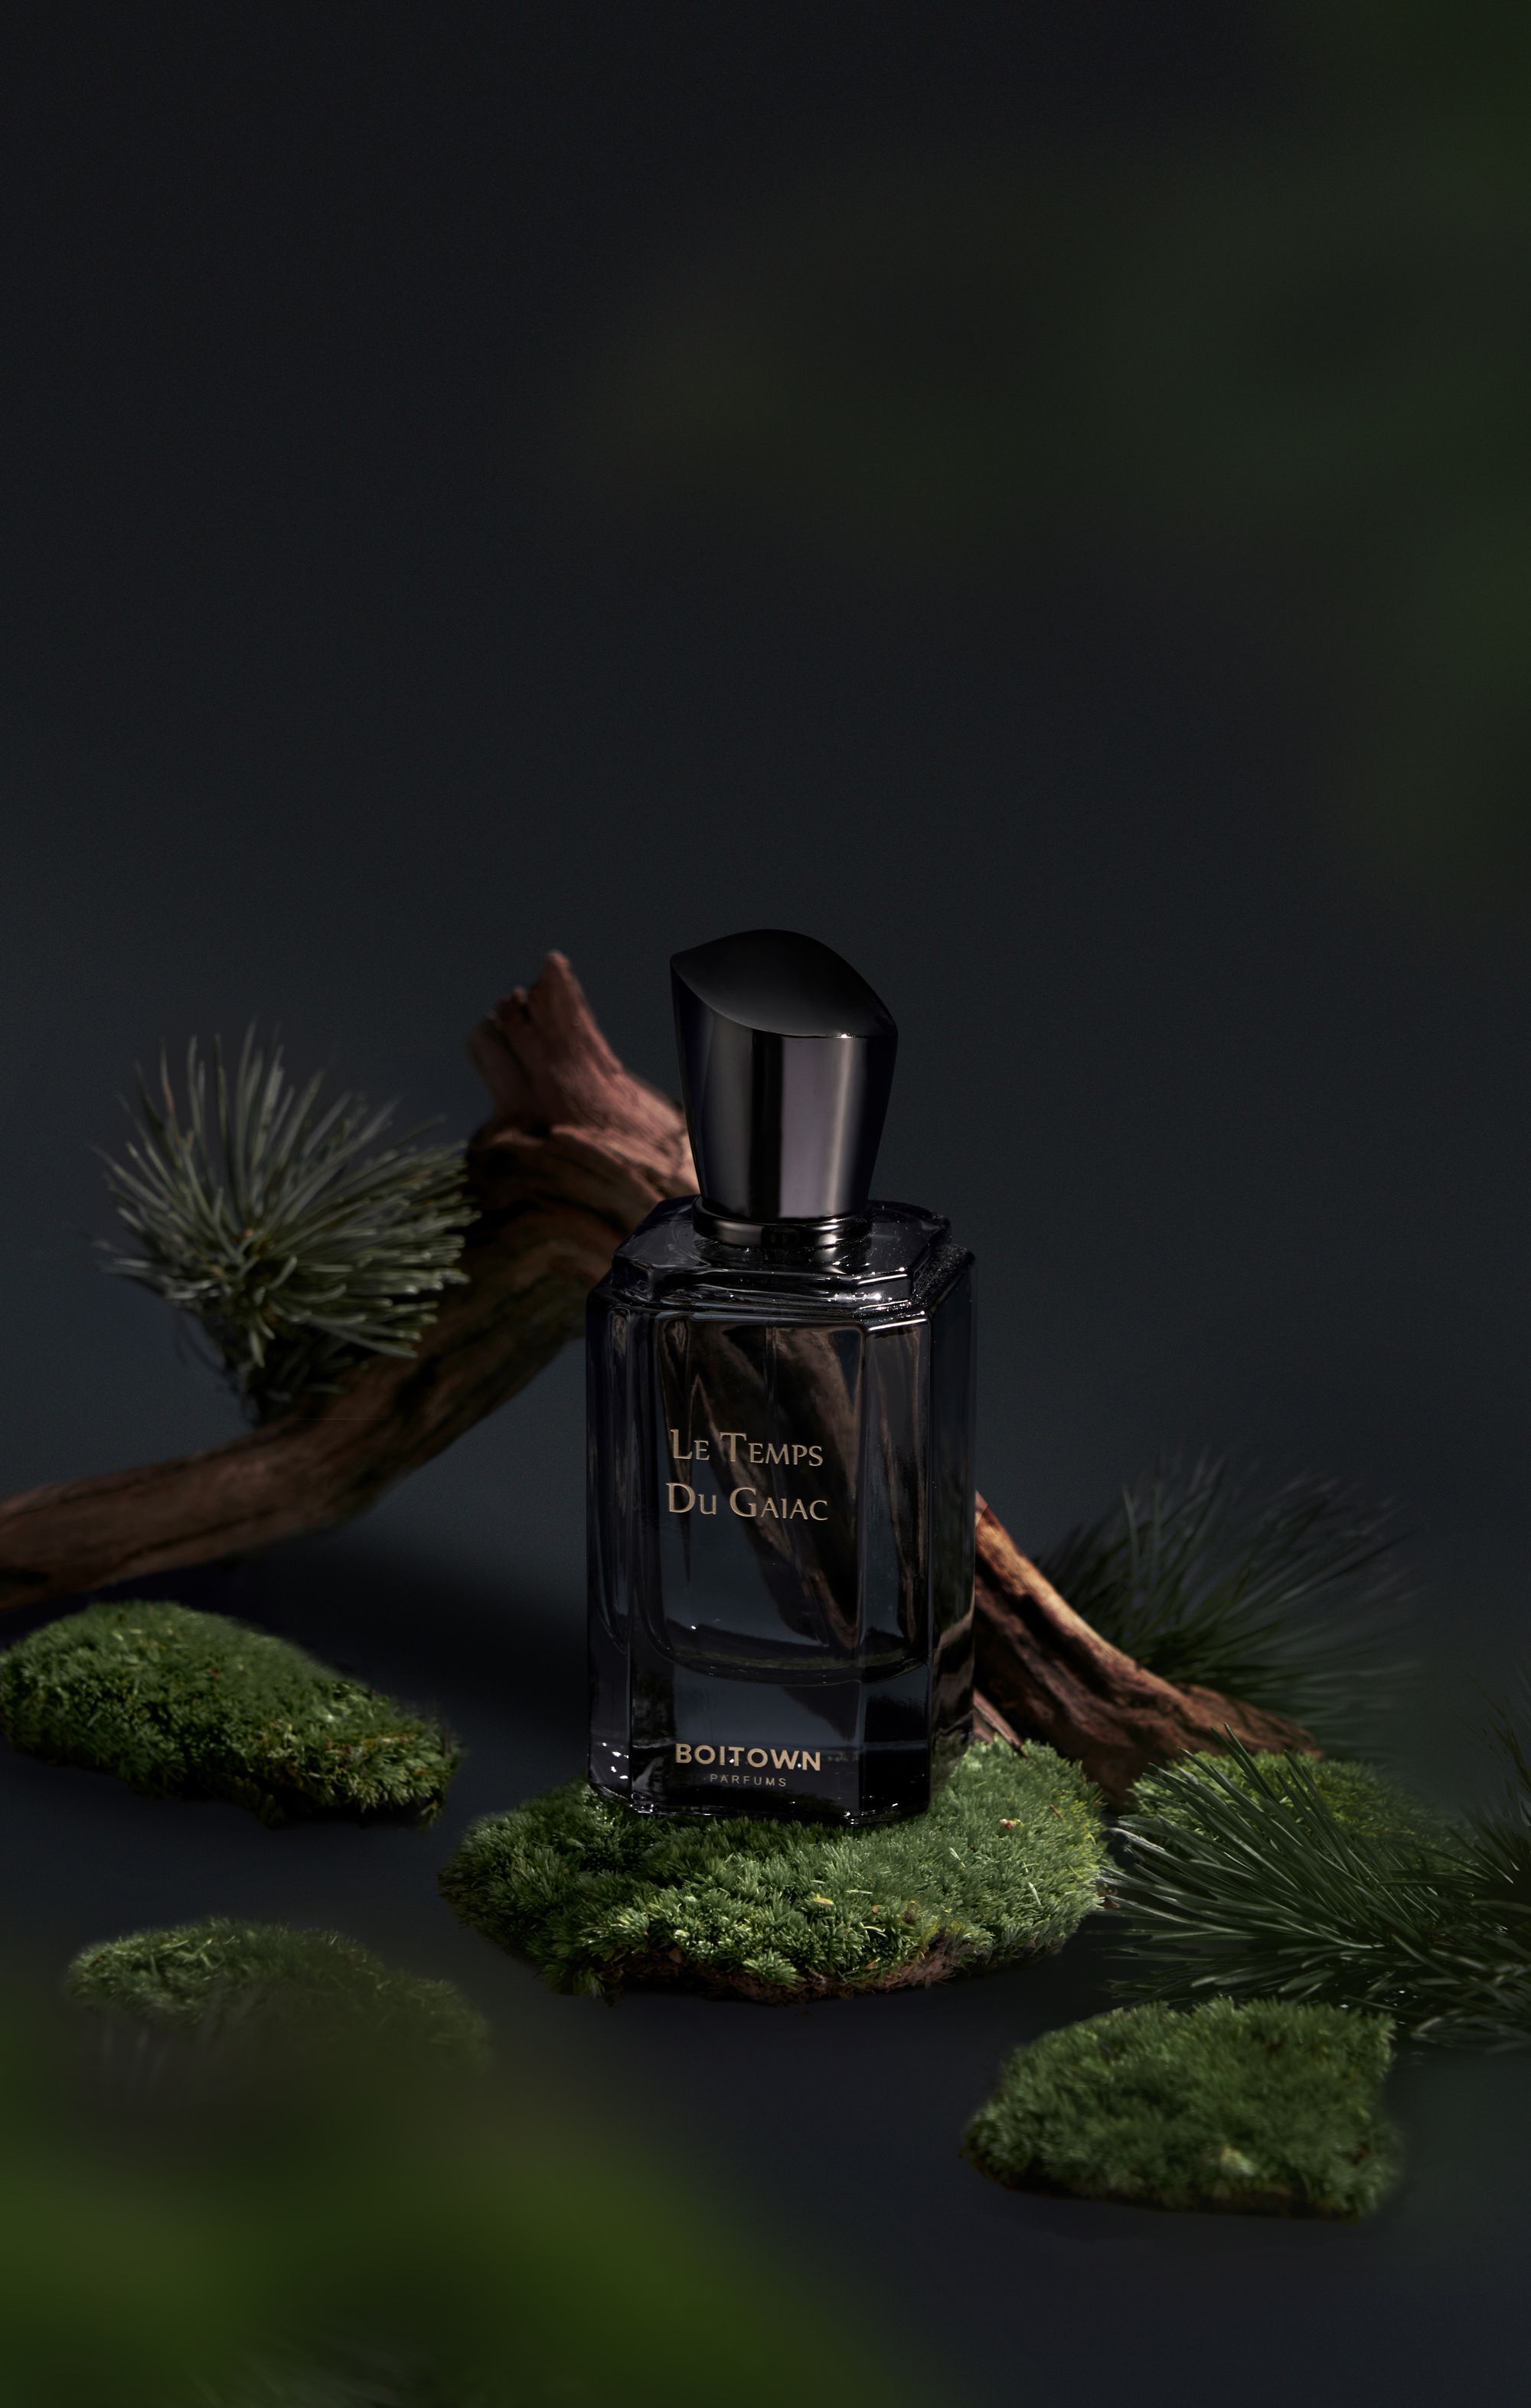 Le Temps Du Gaiac 愈创木年 Boitown 冰希黎 perfume - a new fragrance for women ...